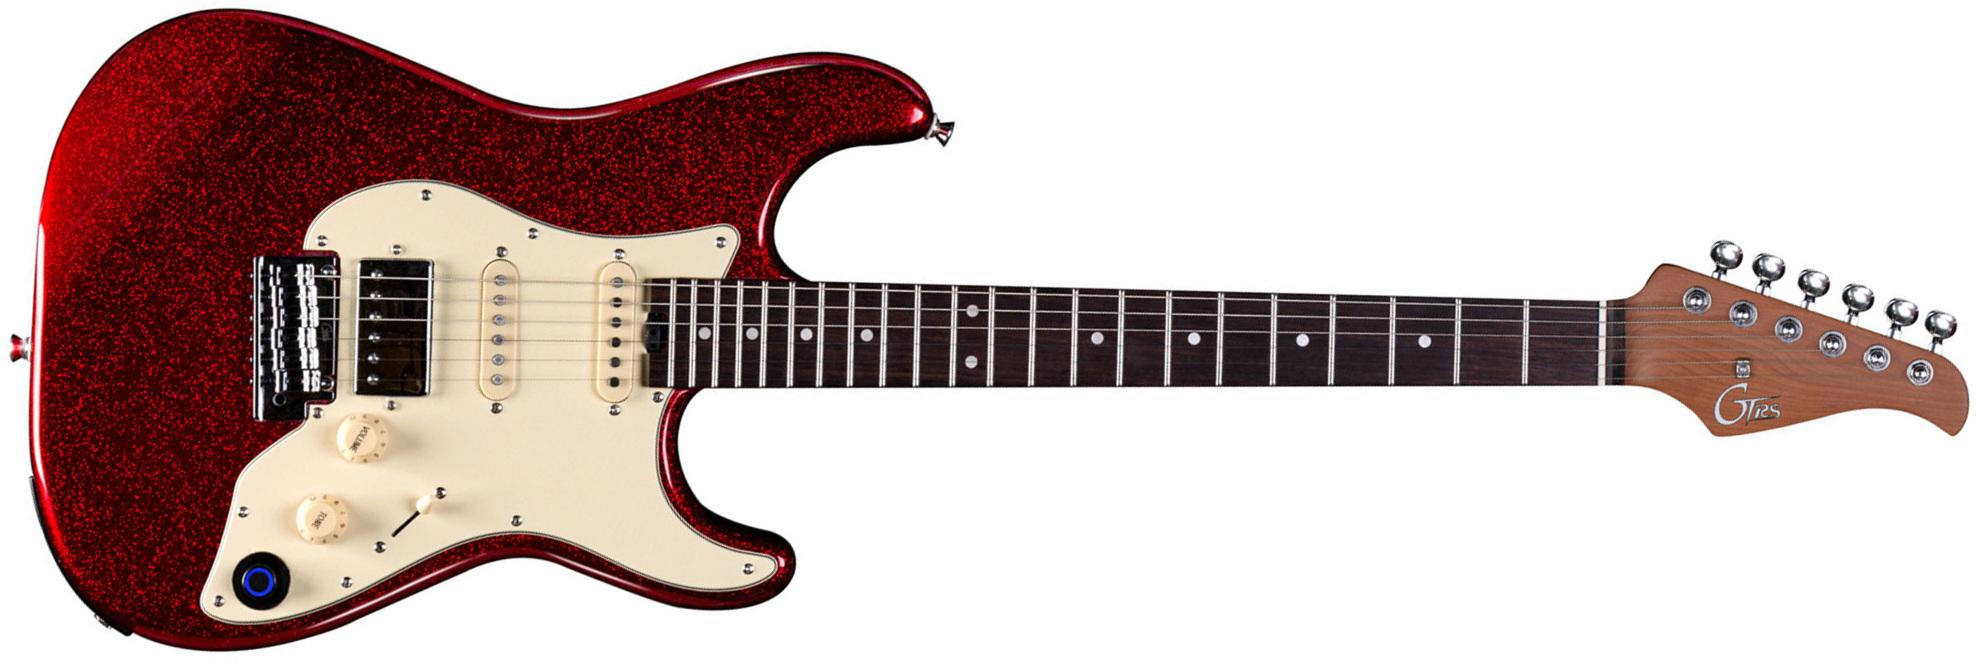 Mooer Gtrs S800 Hss Trem Rw - Metal Red - Guitarra eléctrica de modelización - Main picture